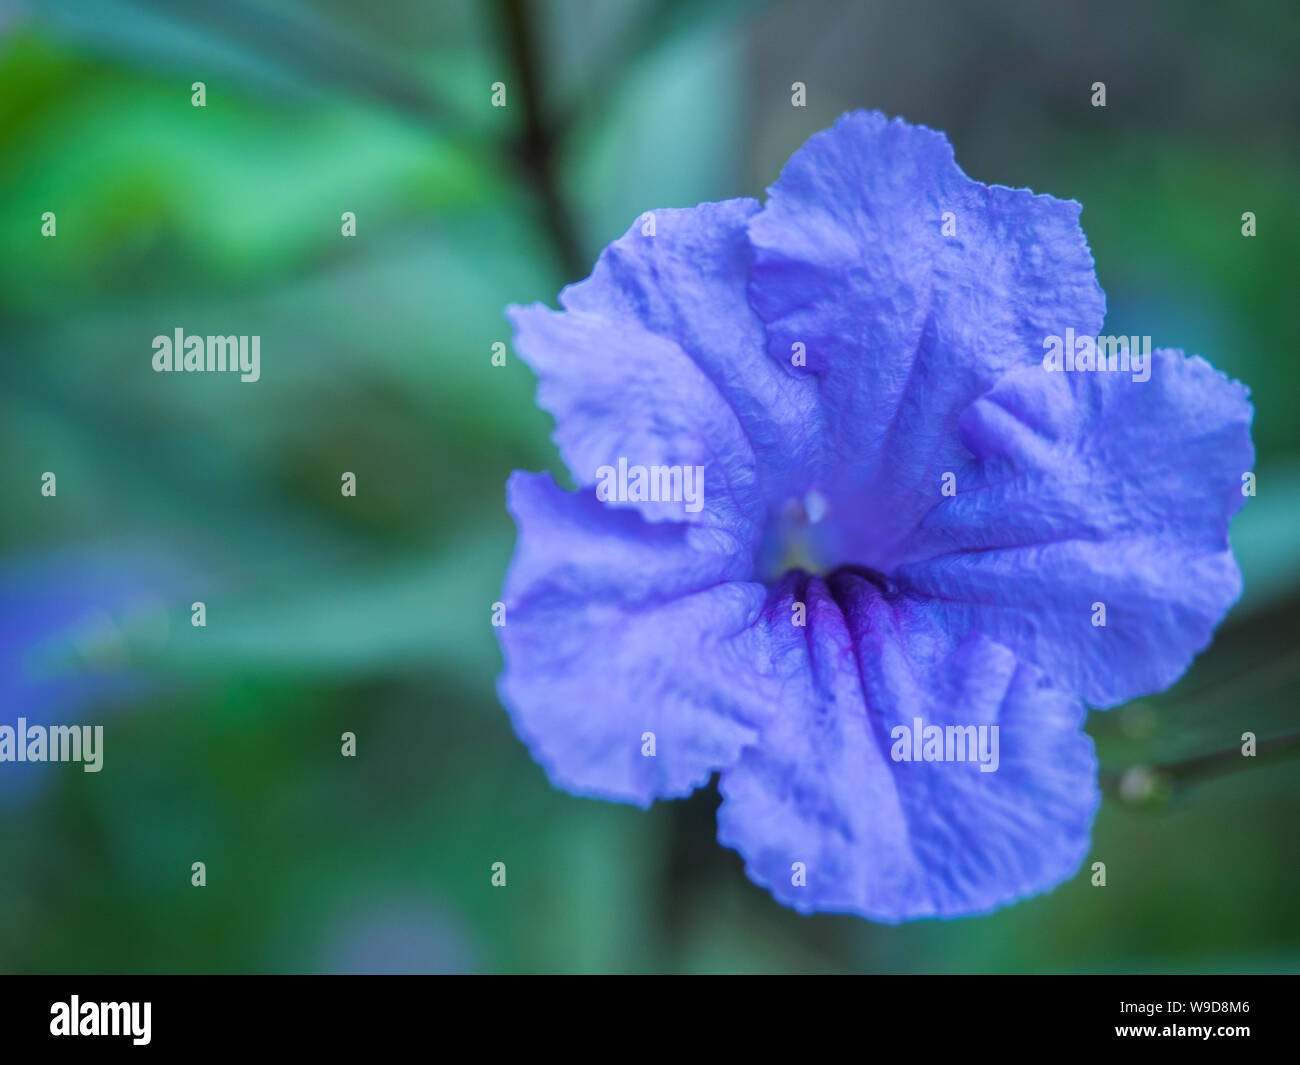 a beautiful purple flower in garden Stock Photo